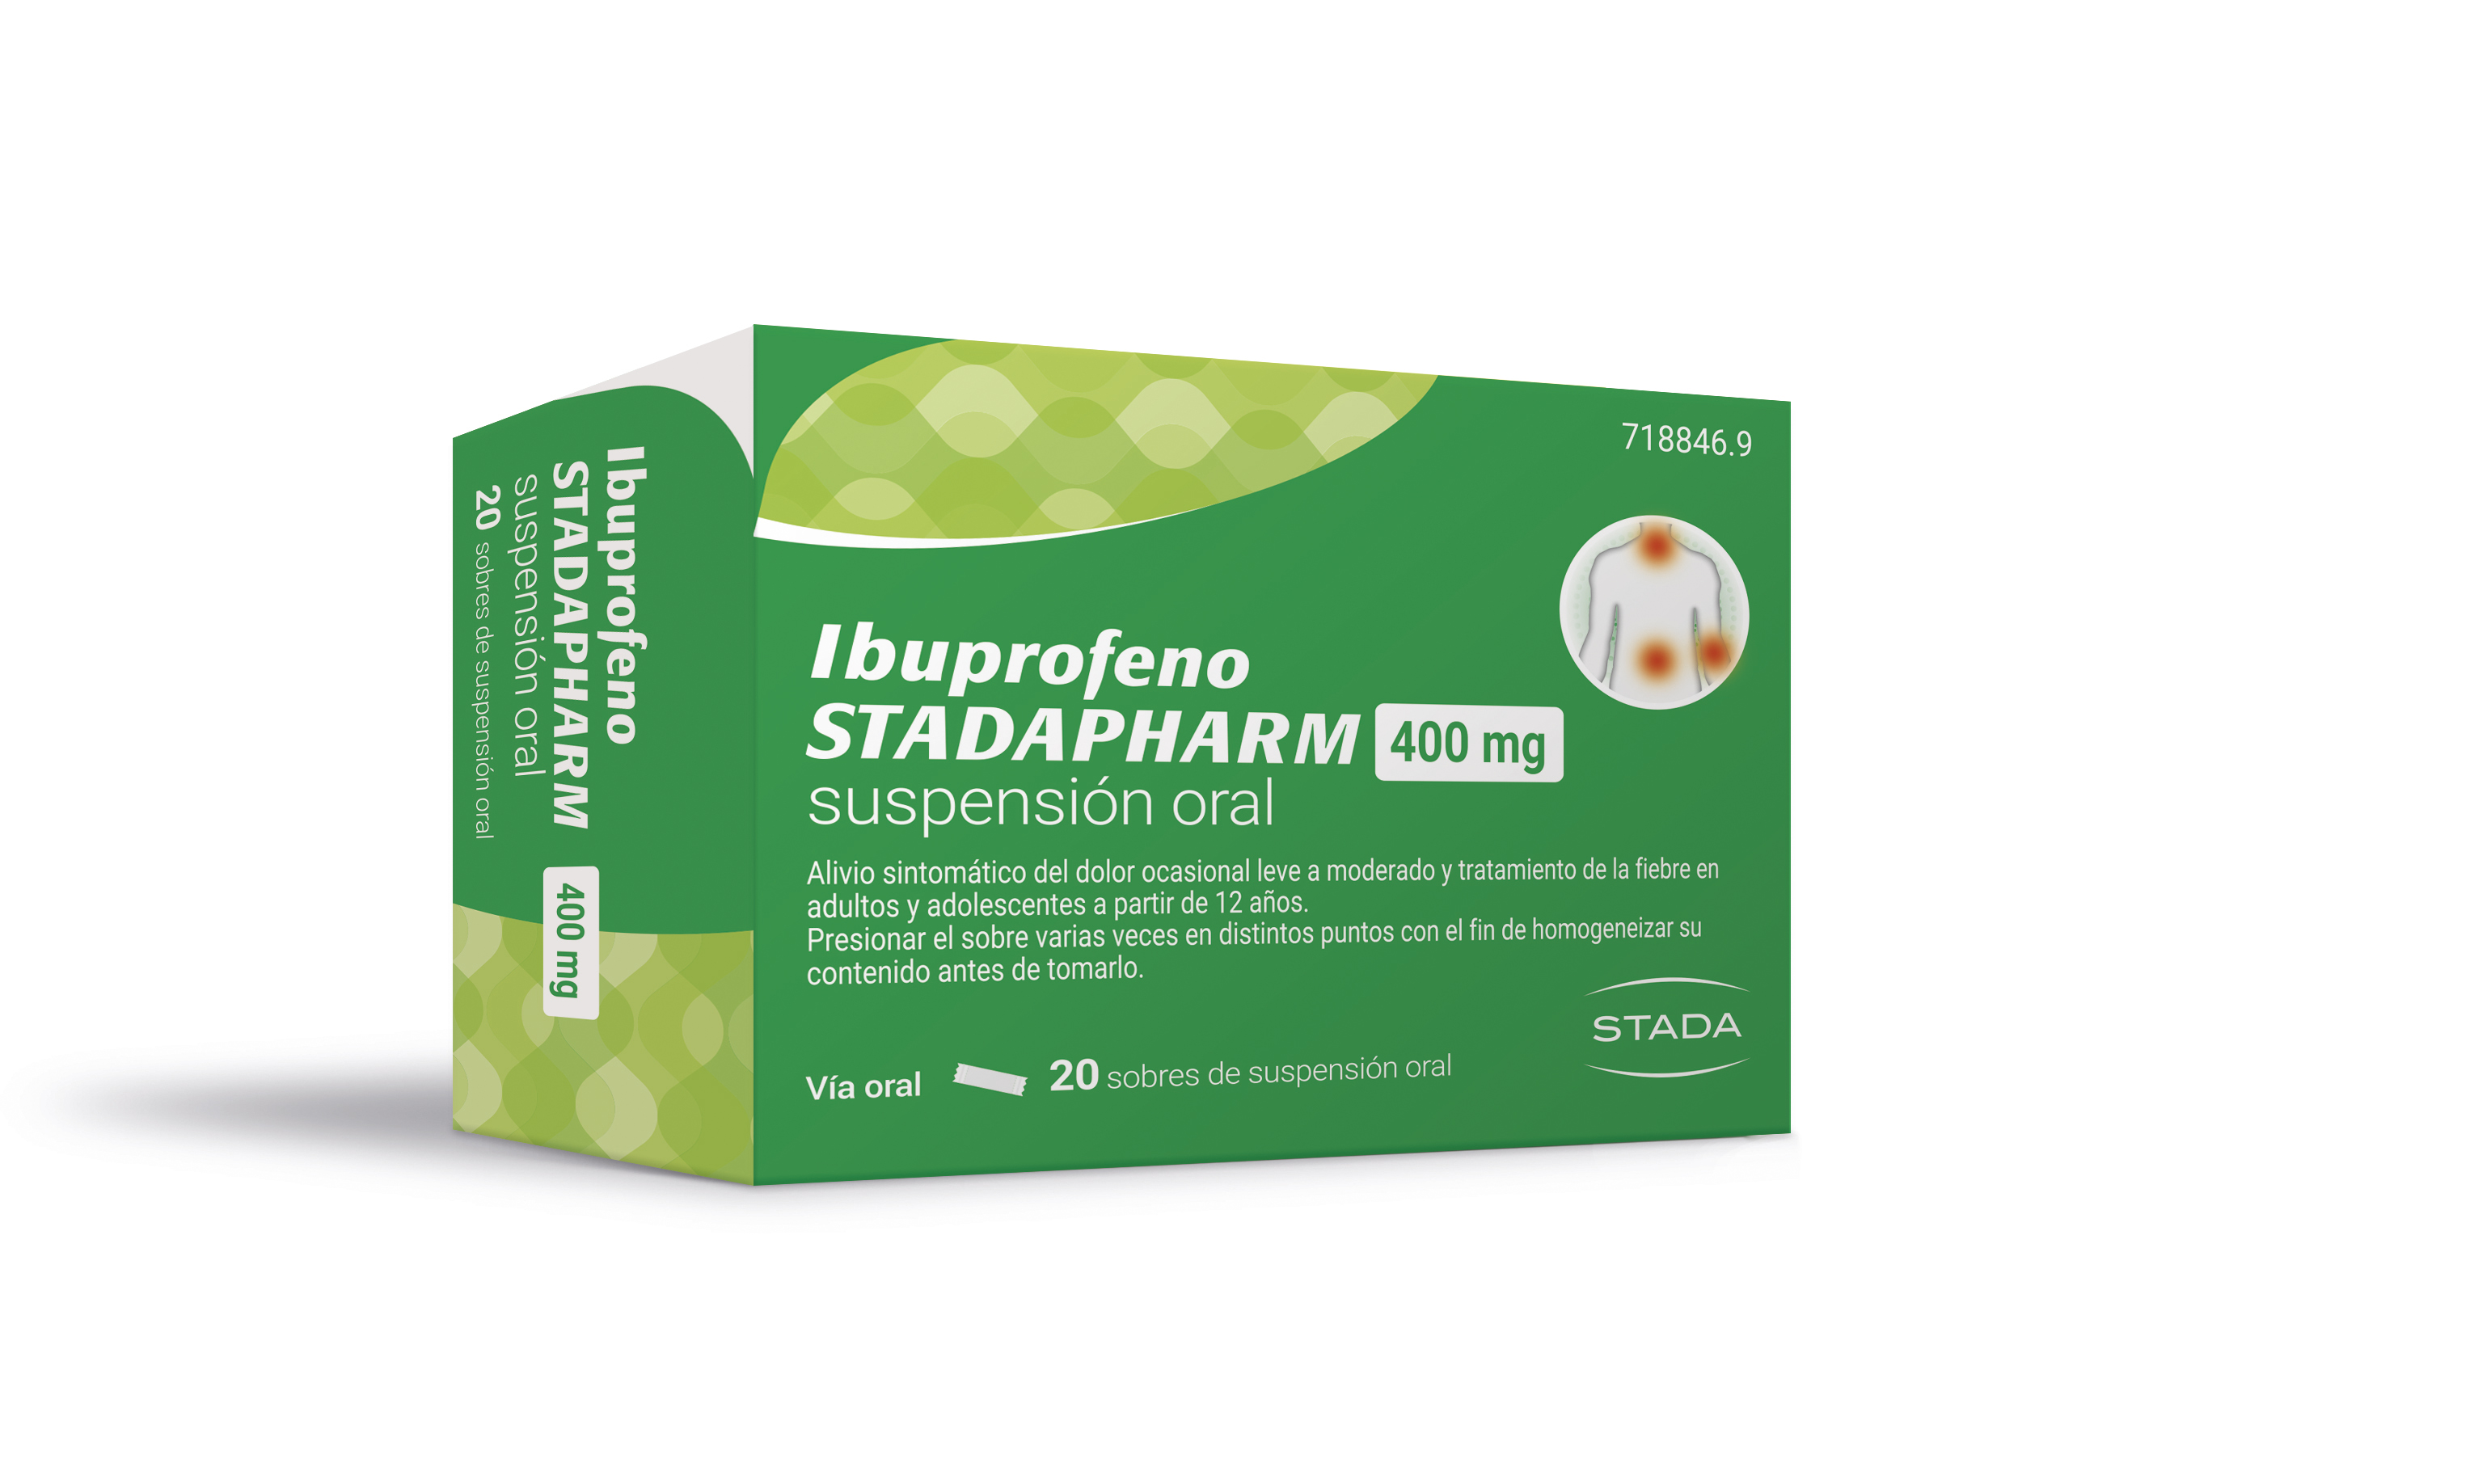 Ibuprofeno STADAPHARM 400 mg 20 sobres de suspensión oral